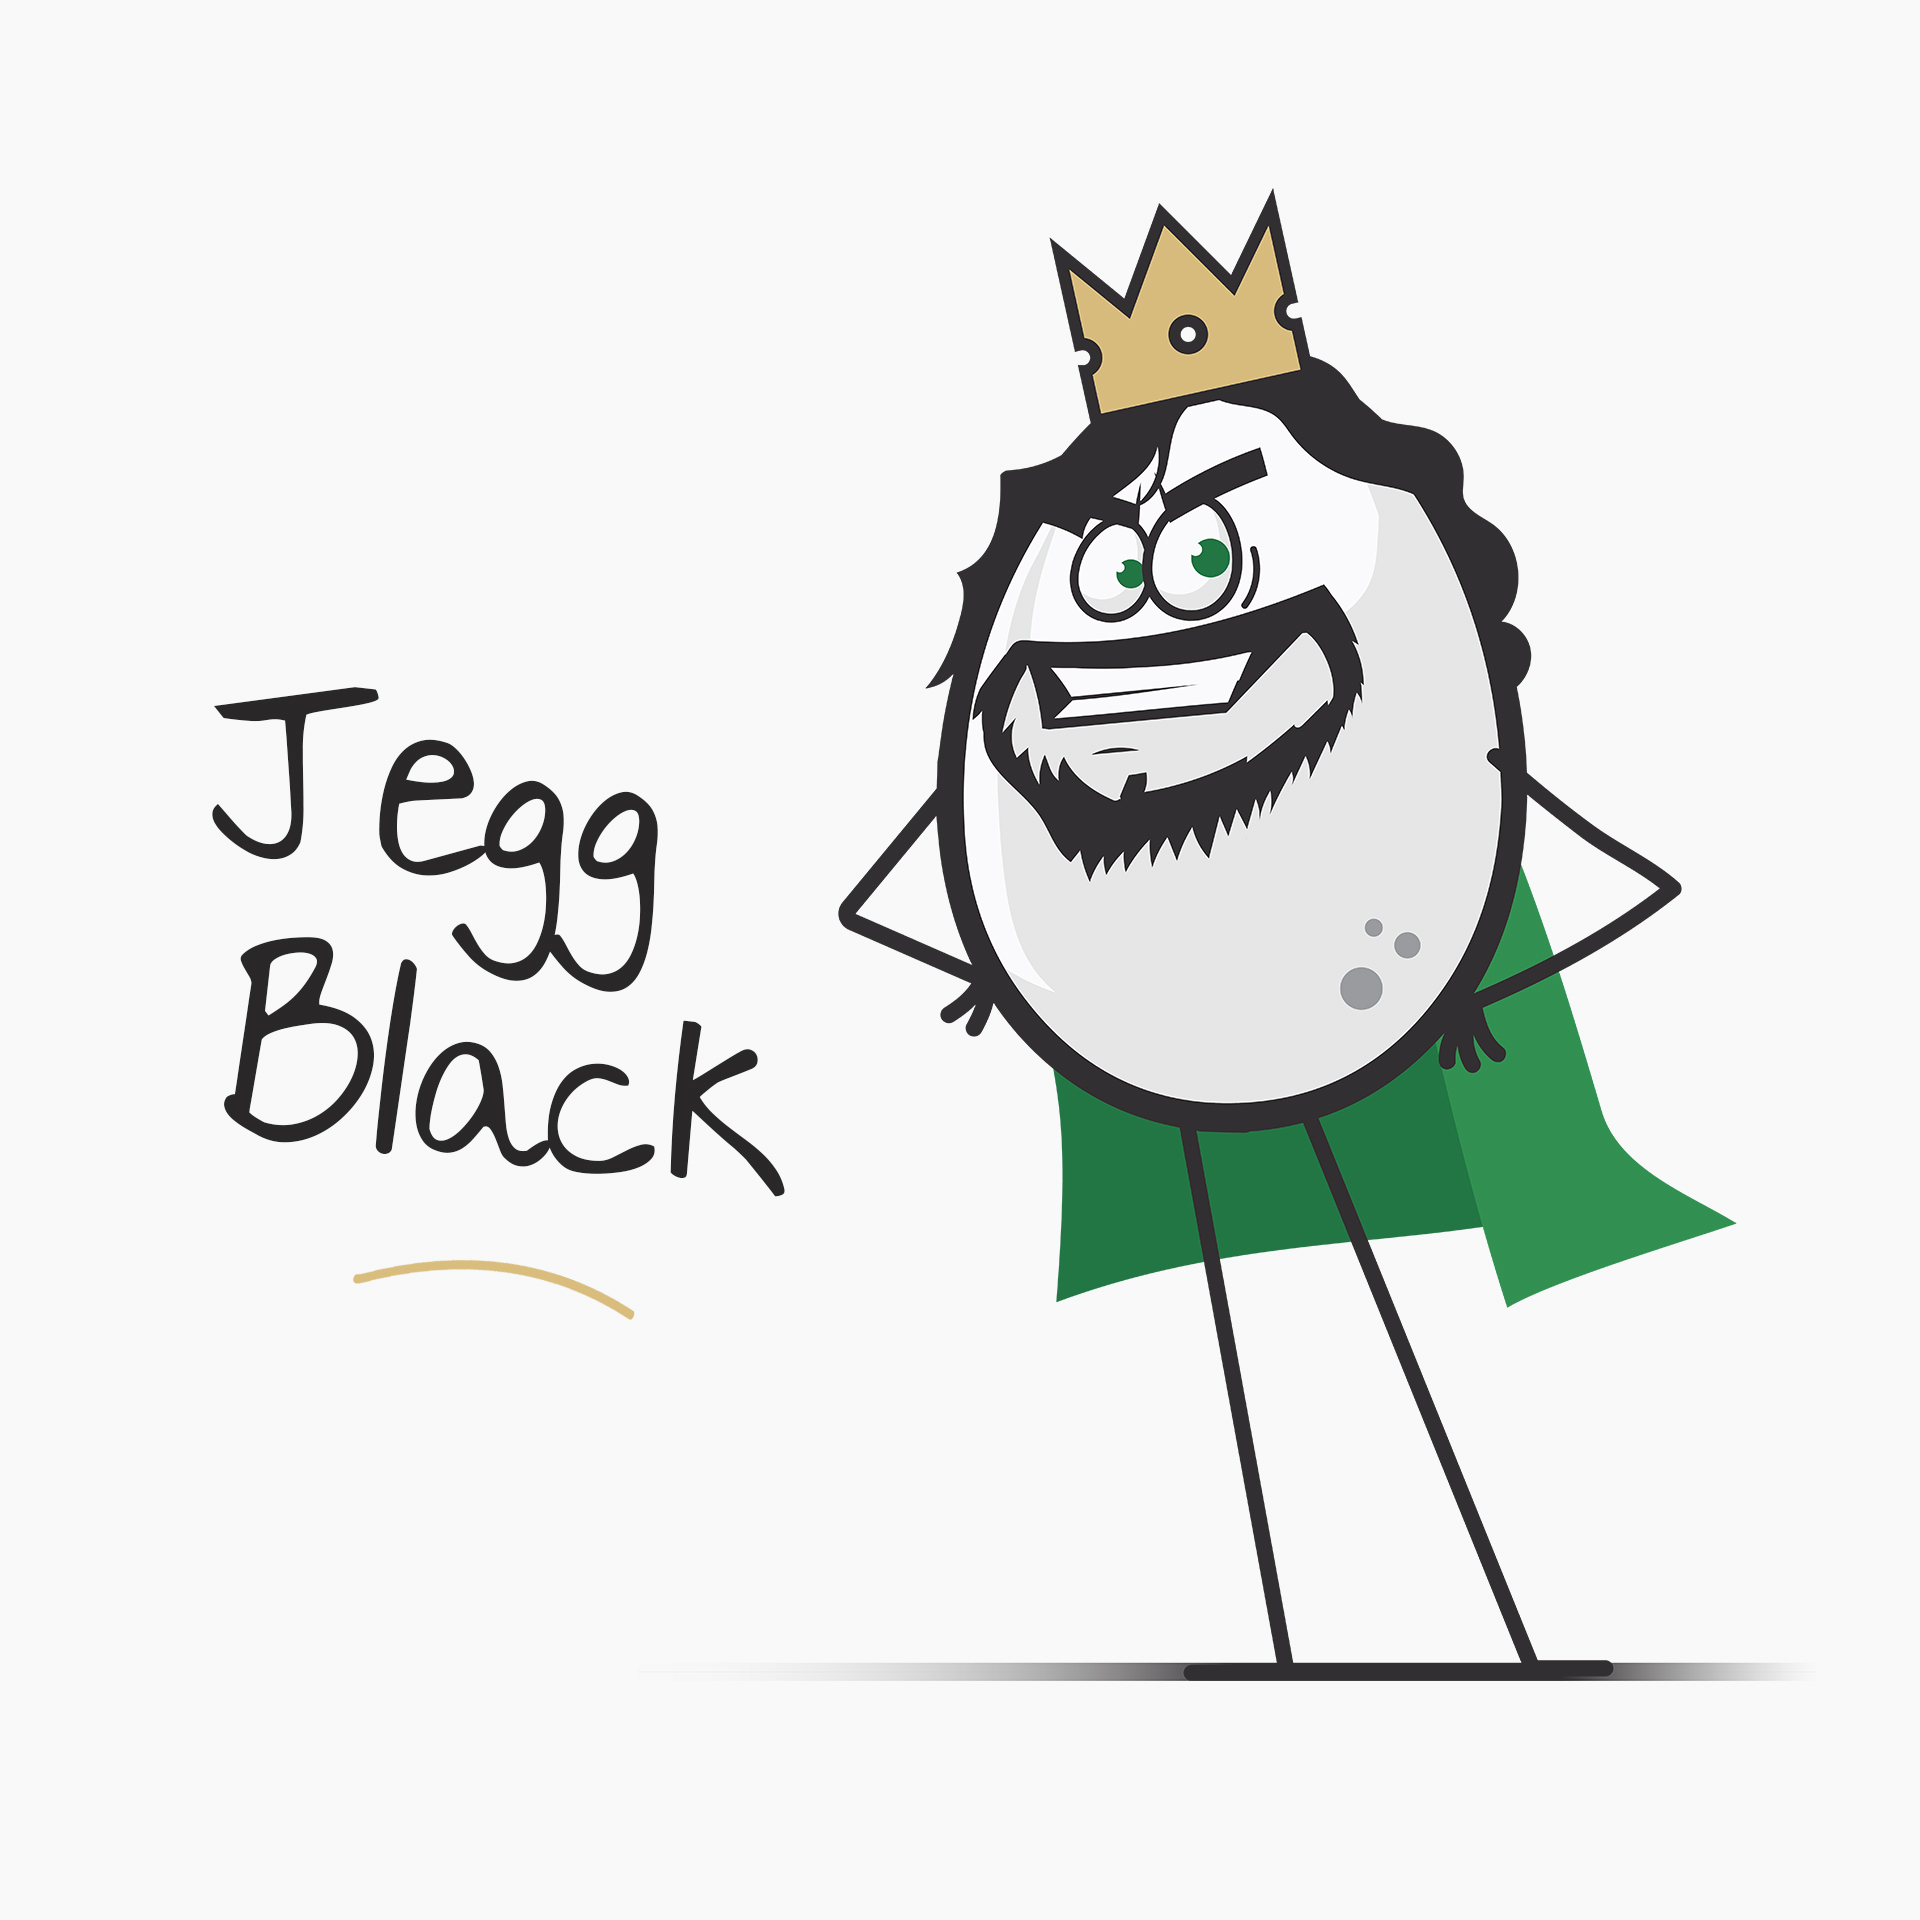 Jegg Black